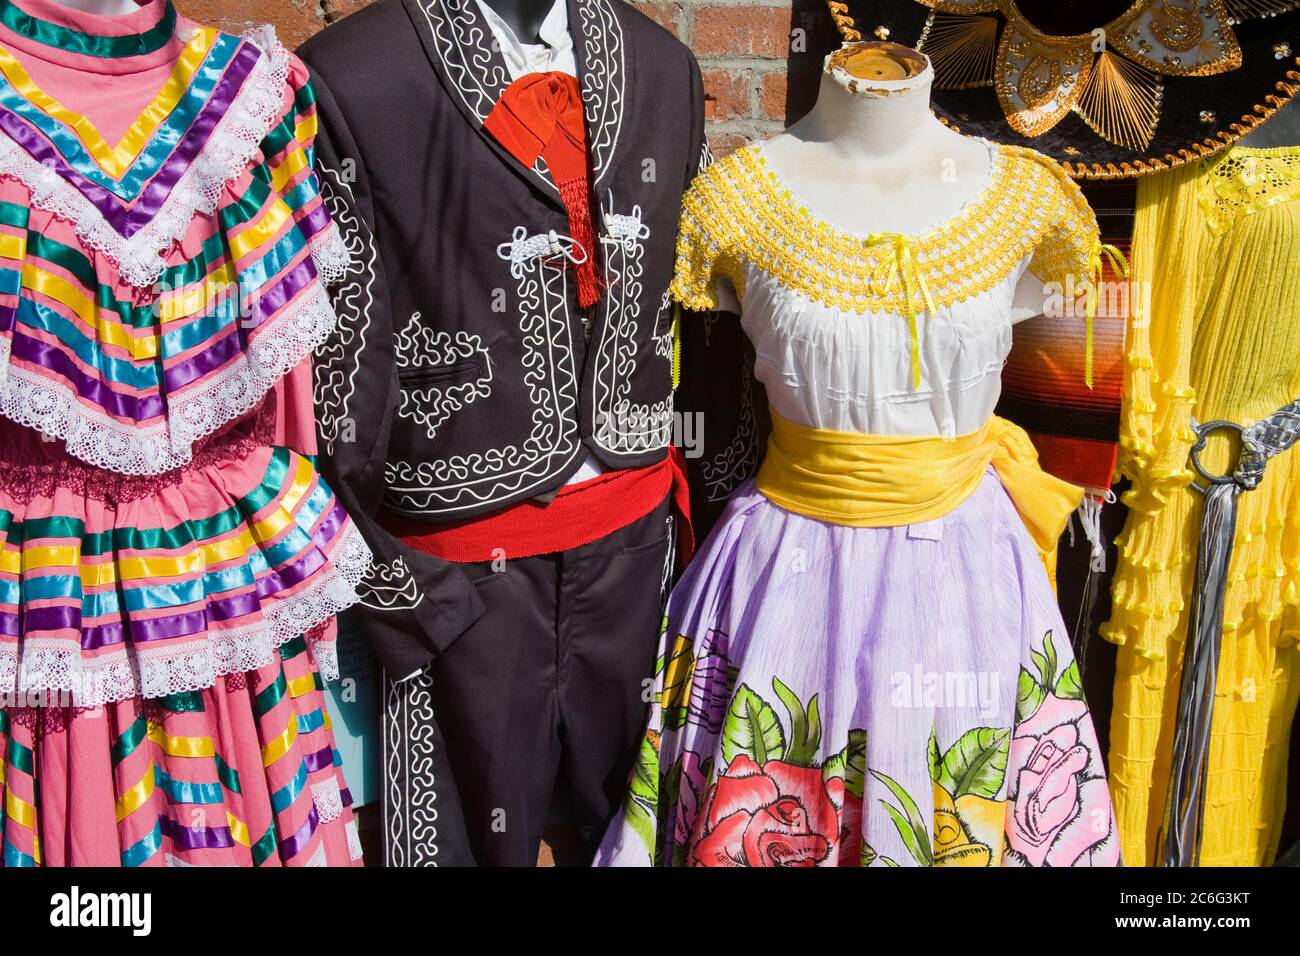 Magasin de vêtements mexicains, Olvera Street, monument historique d'El Pueblo, Los Angeles, Californie, États-Unis Banque D'Images